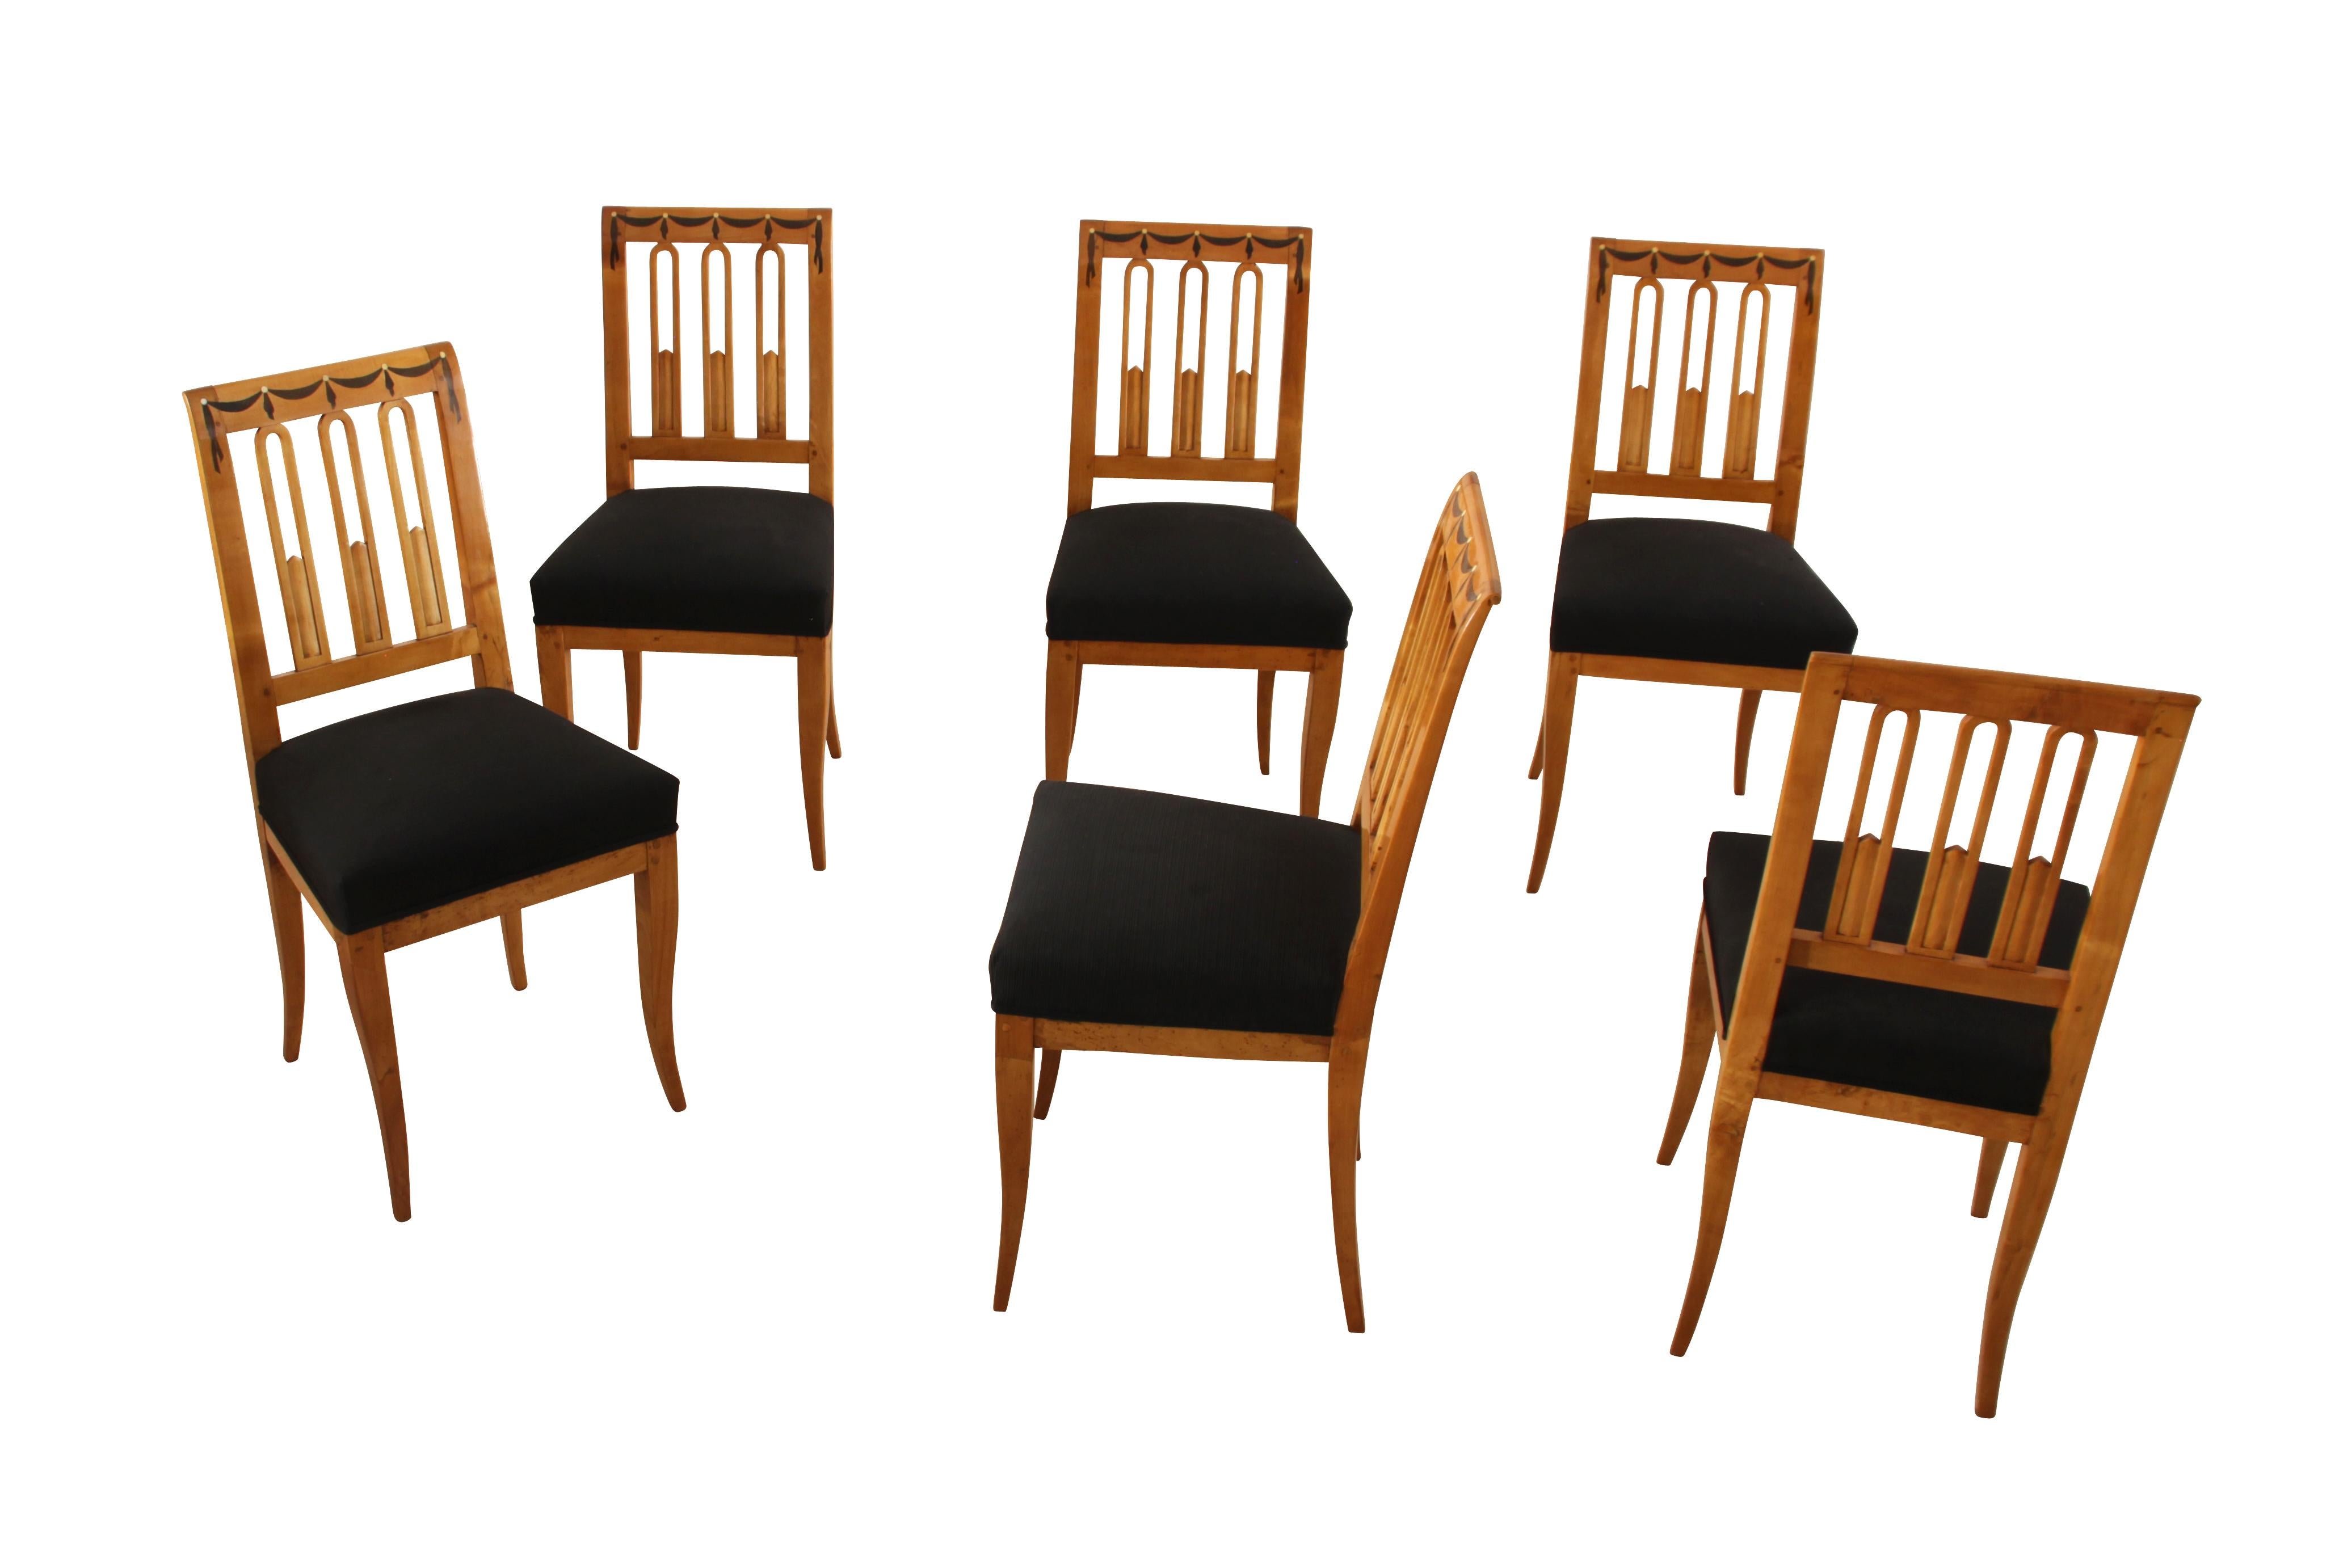 Satz von sechs frühen Biedermeierstühlen aus Süddeutschland um 1820.

Die Stühle sind aus schönem Birkenmassivholz gefertigt. Um die Oberseite der Stühle herum befinden sich Intarsien aus Ebenholz und Knochen in Form einer Girlande. Sehr